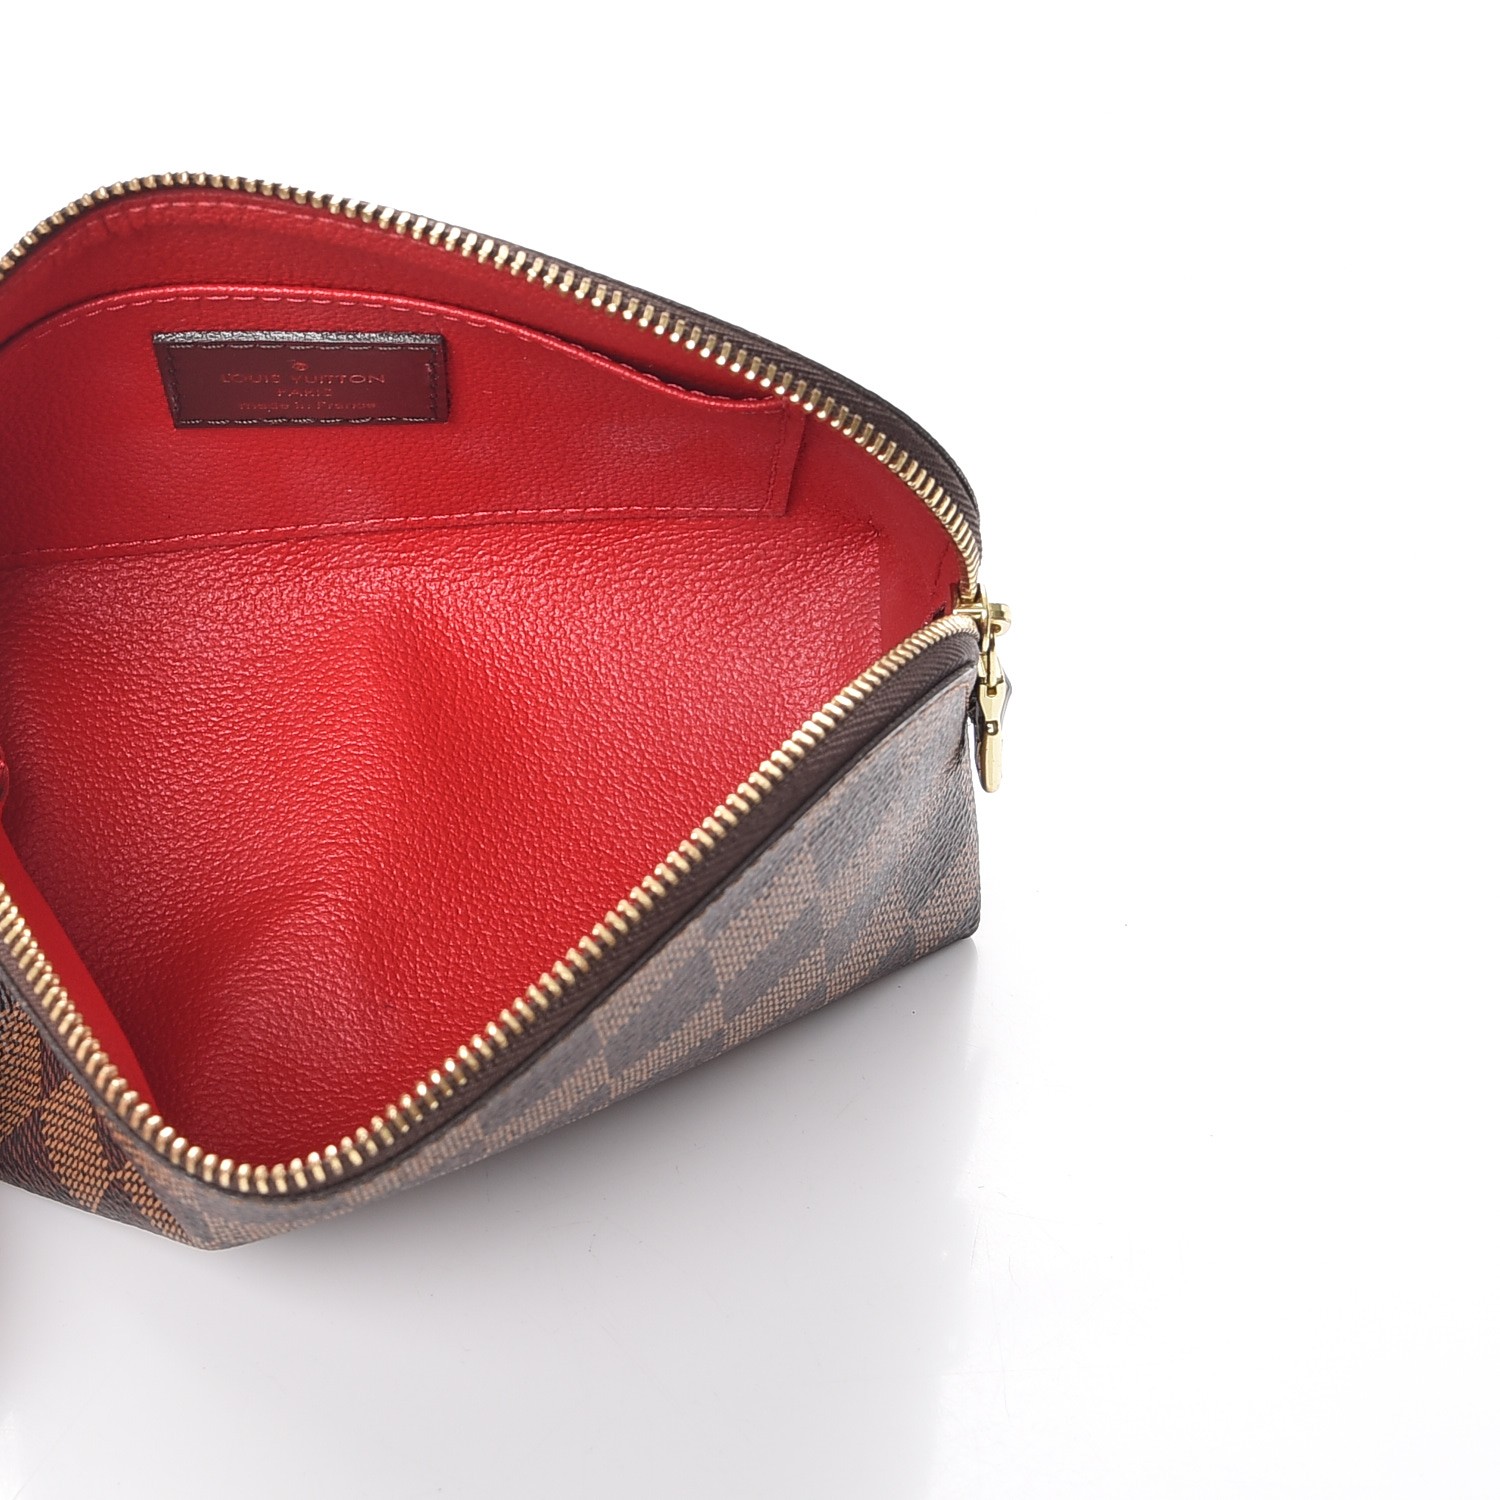 Louis Vuitton Damier Ebene cosmetic case pm – Bag Babes Boutique LLC